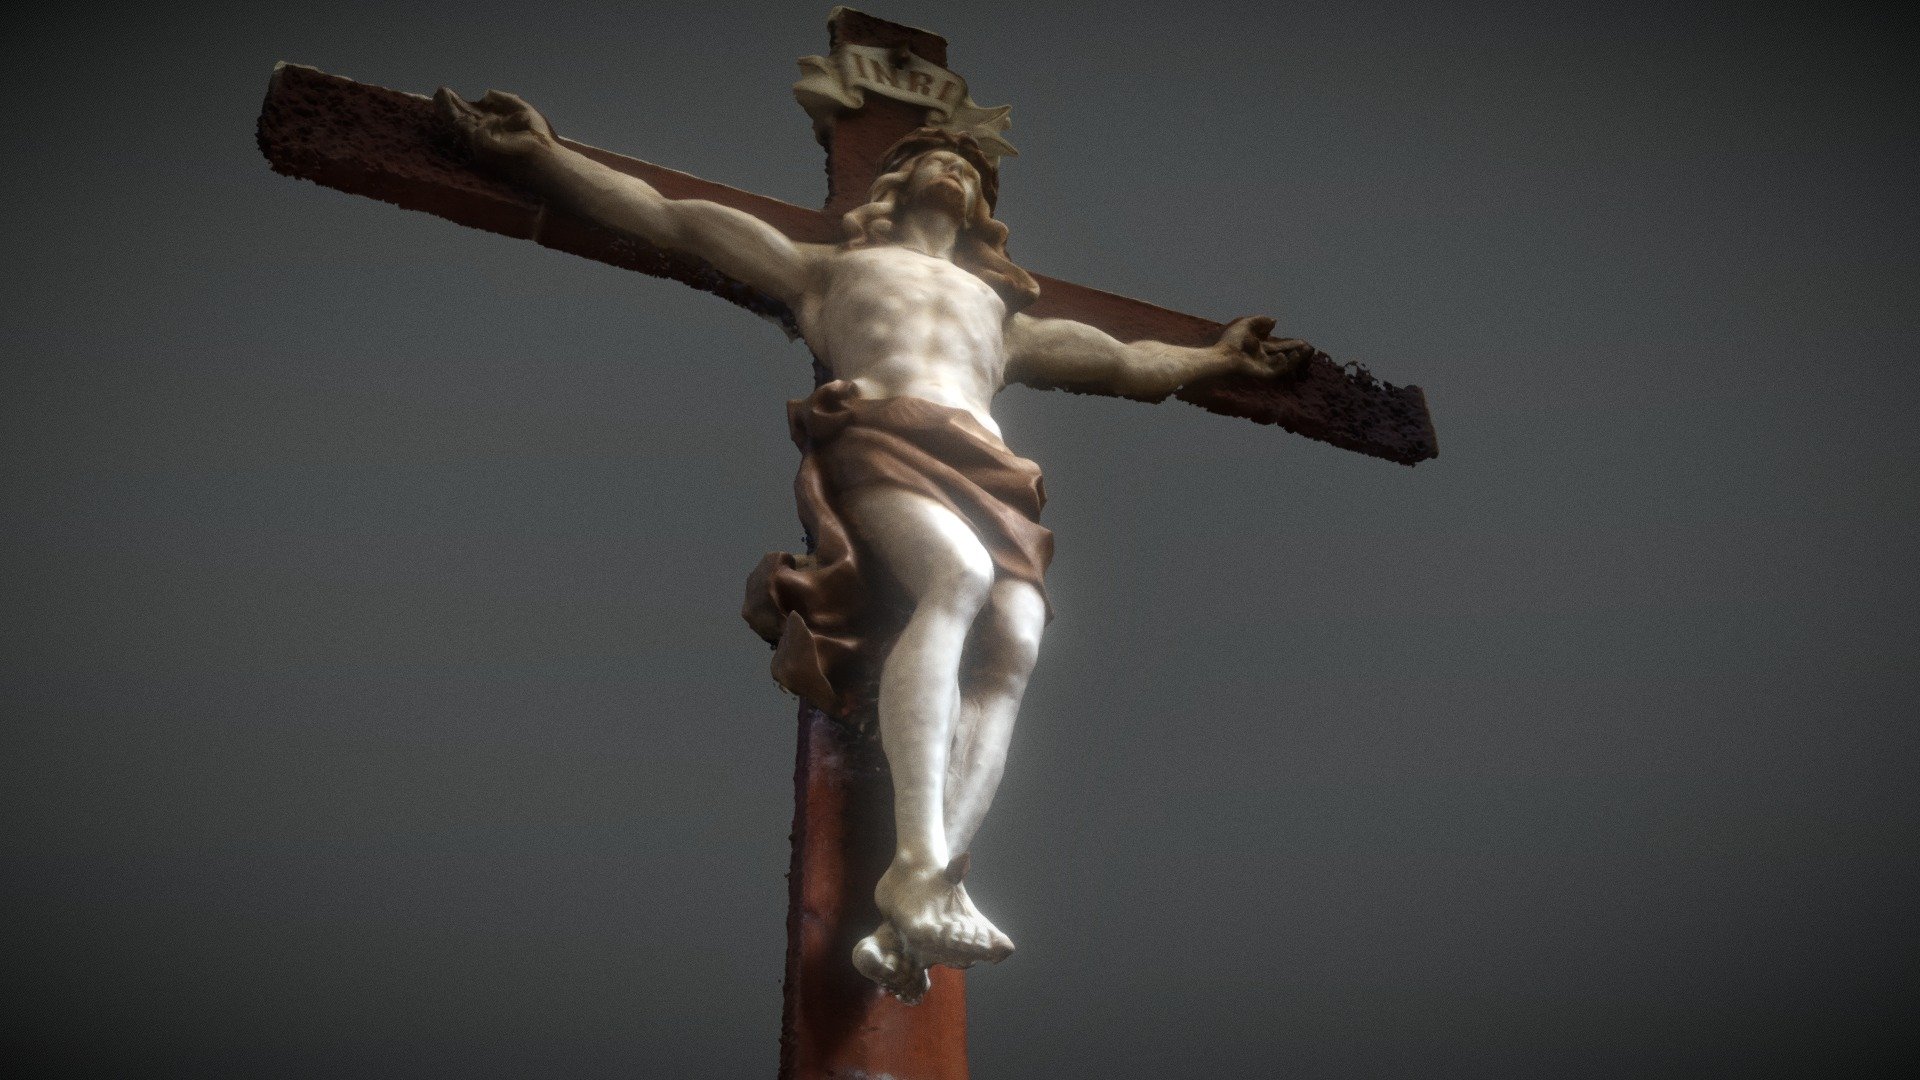 A Corpus Christi figure 1966